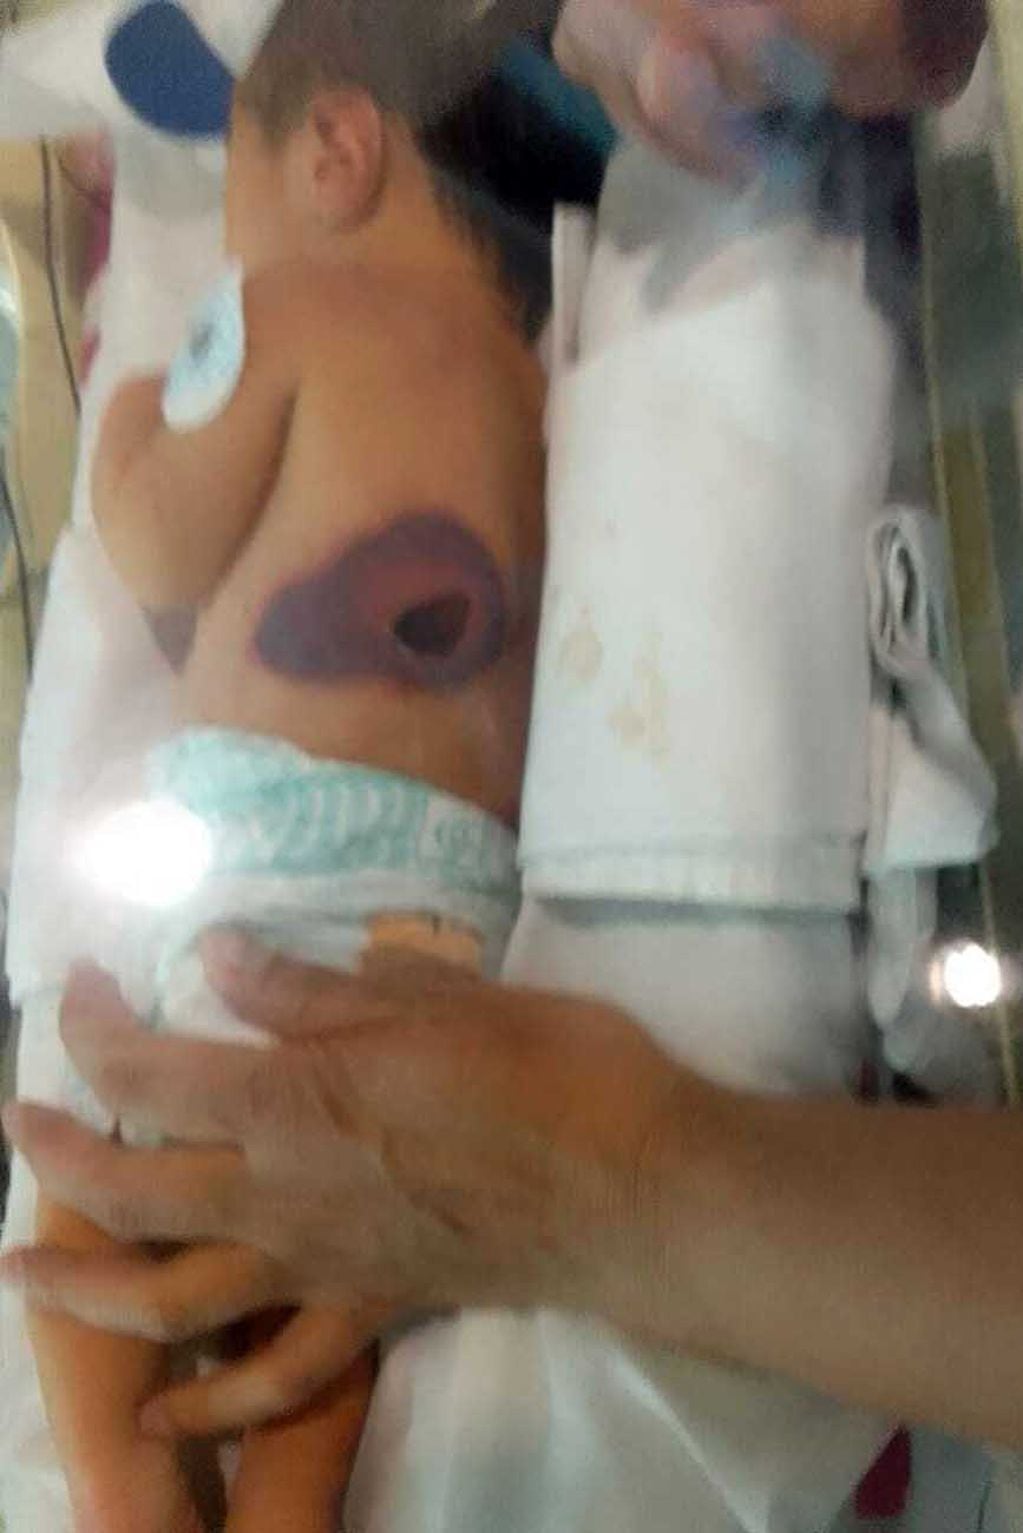 Lesiones de la bebé PM por prácticas bajo sospecha en el Hospital Materno Neonatal. Fotos autorizadas y gentileza de la familia